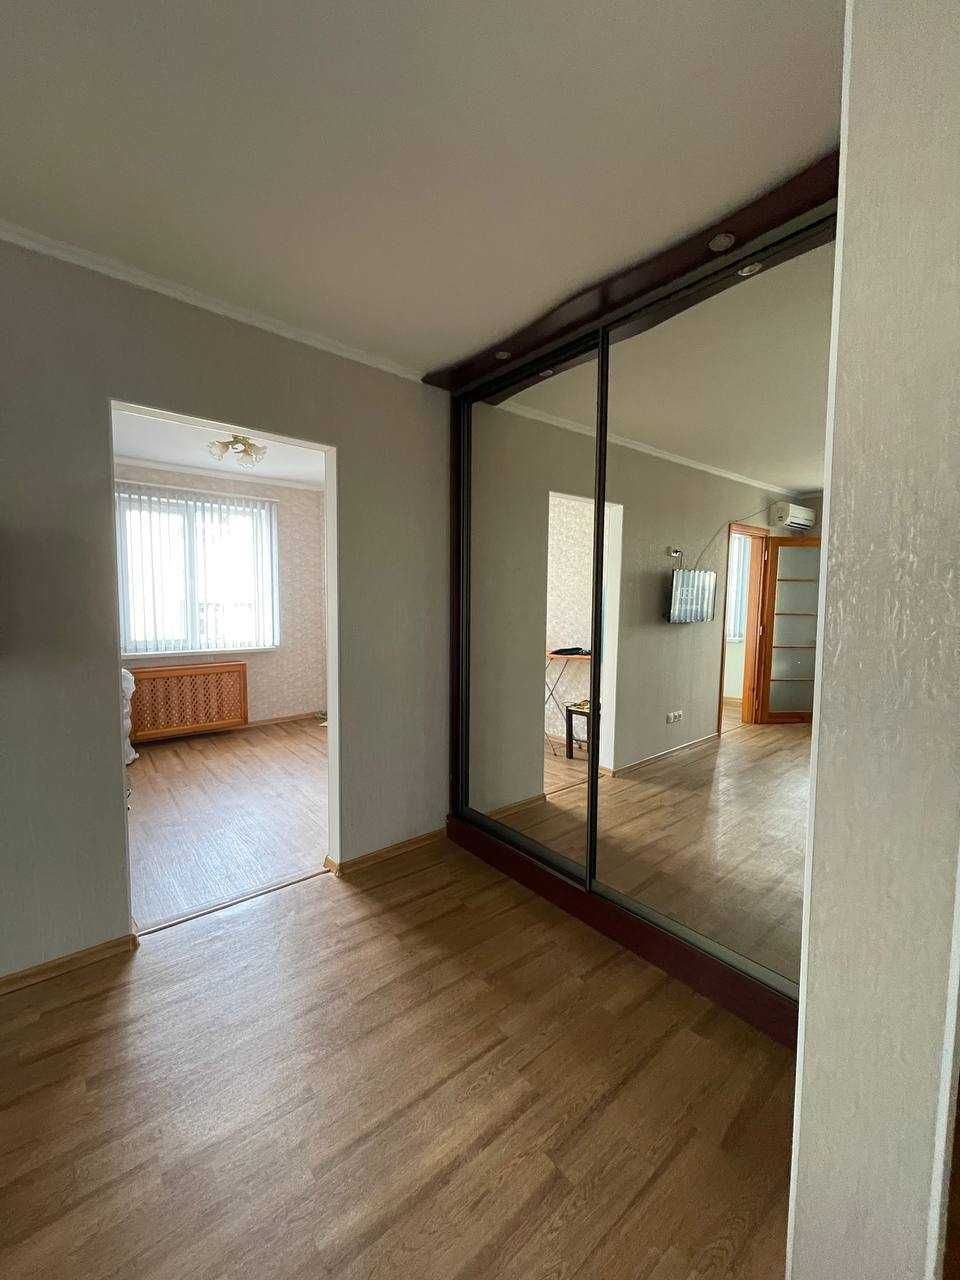 Продам 3-комнатную квартиру с ремонтом на Черёмушках!